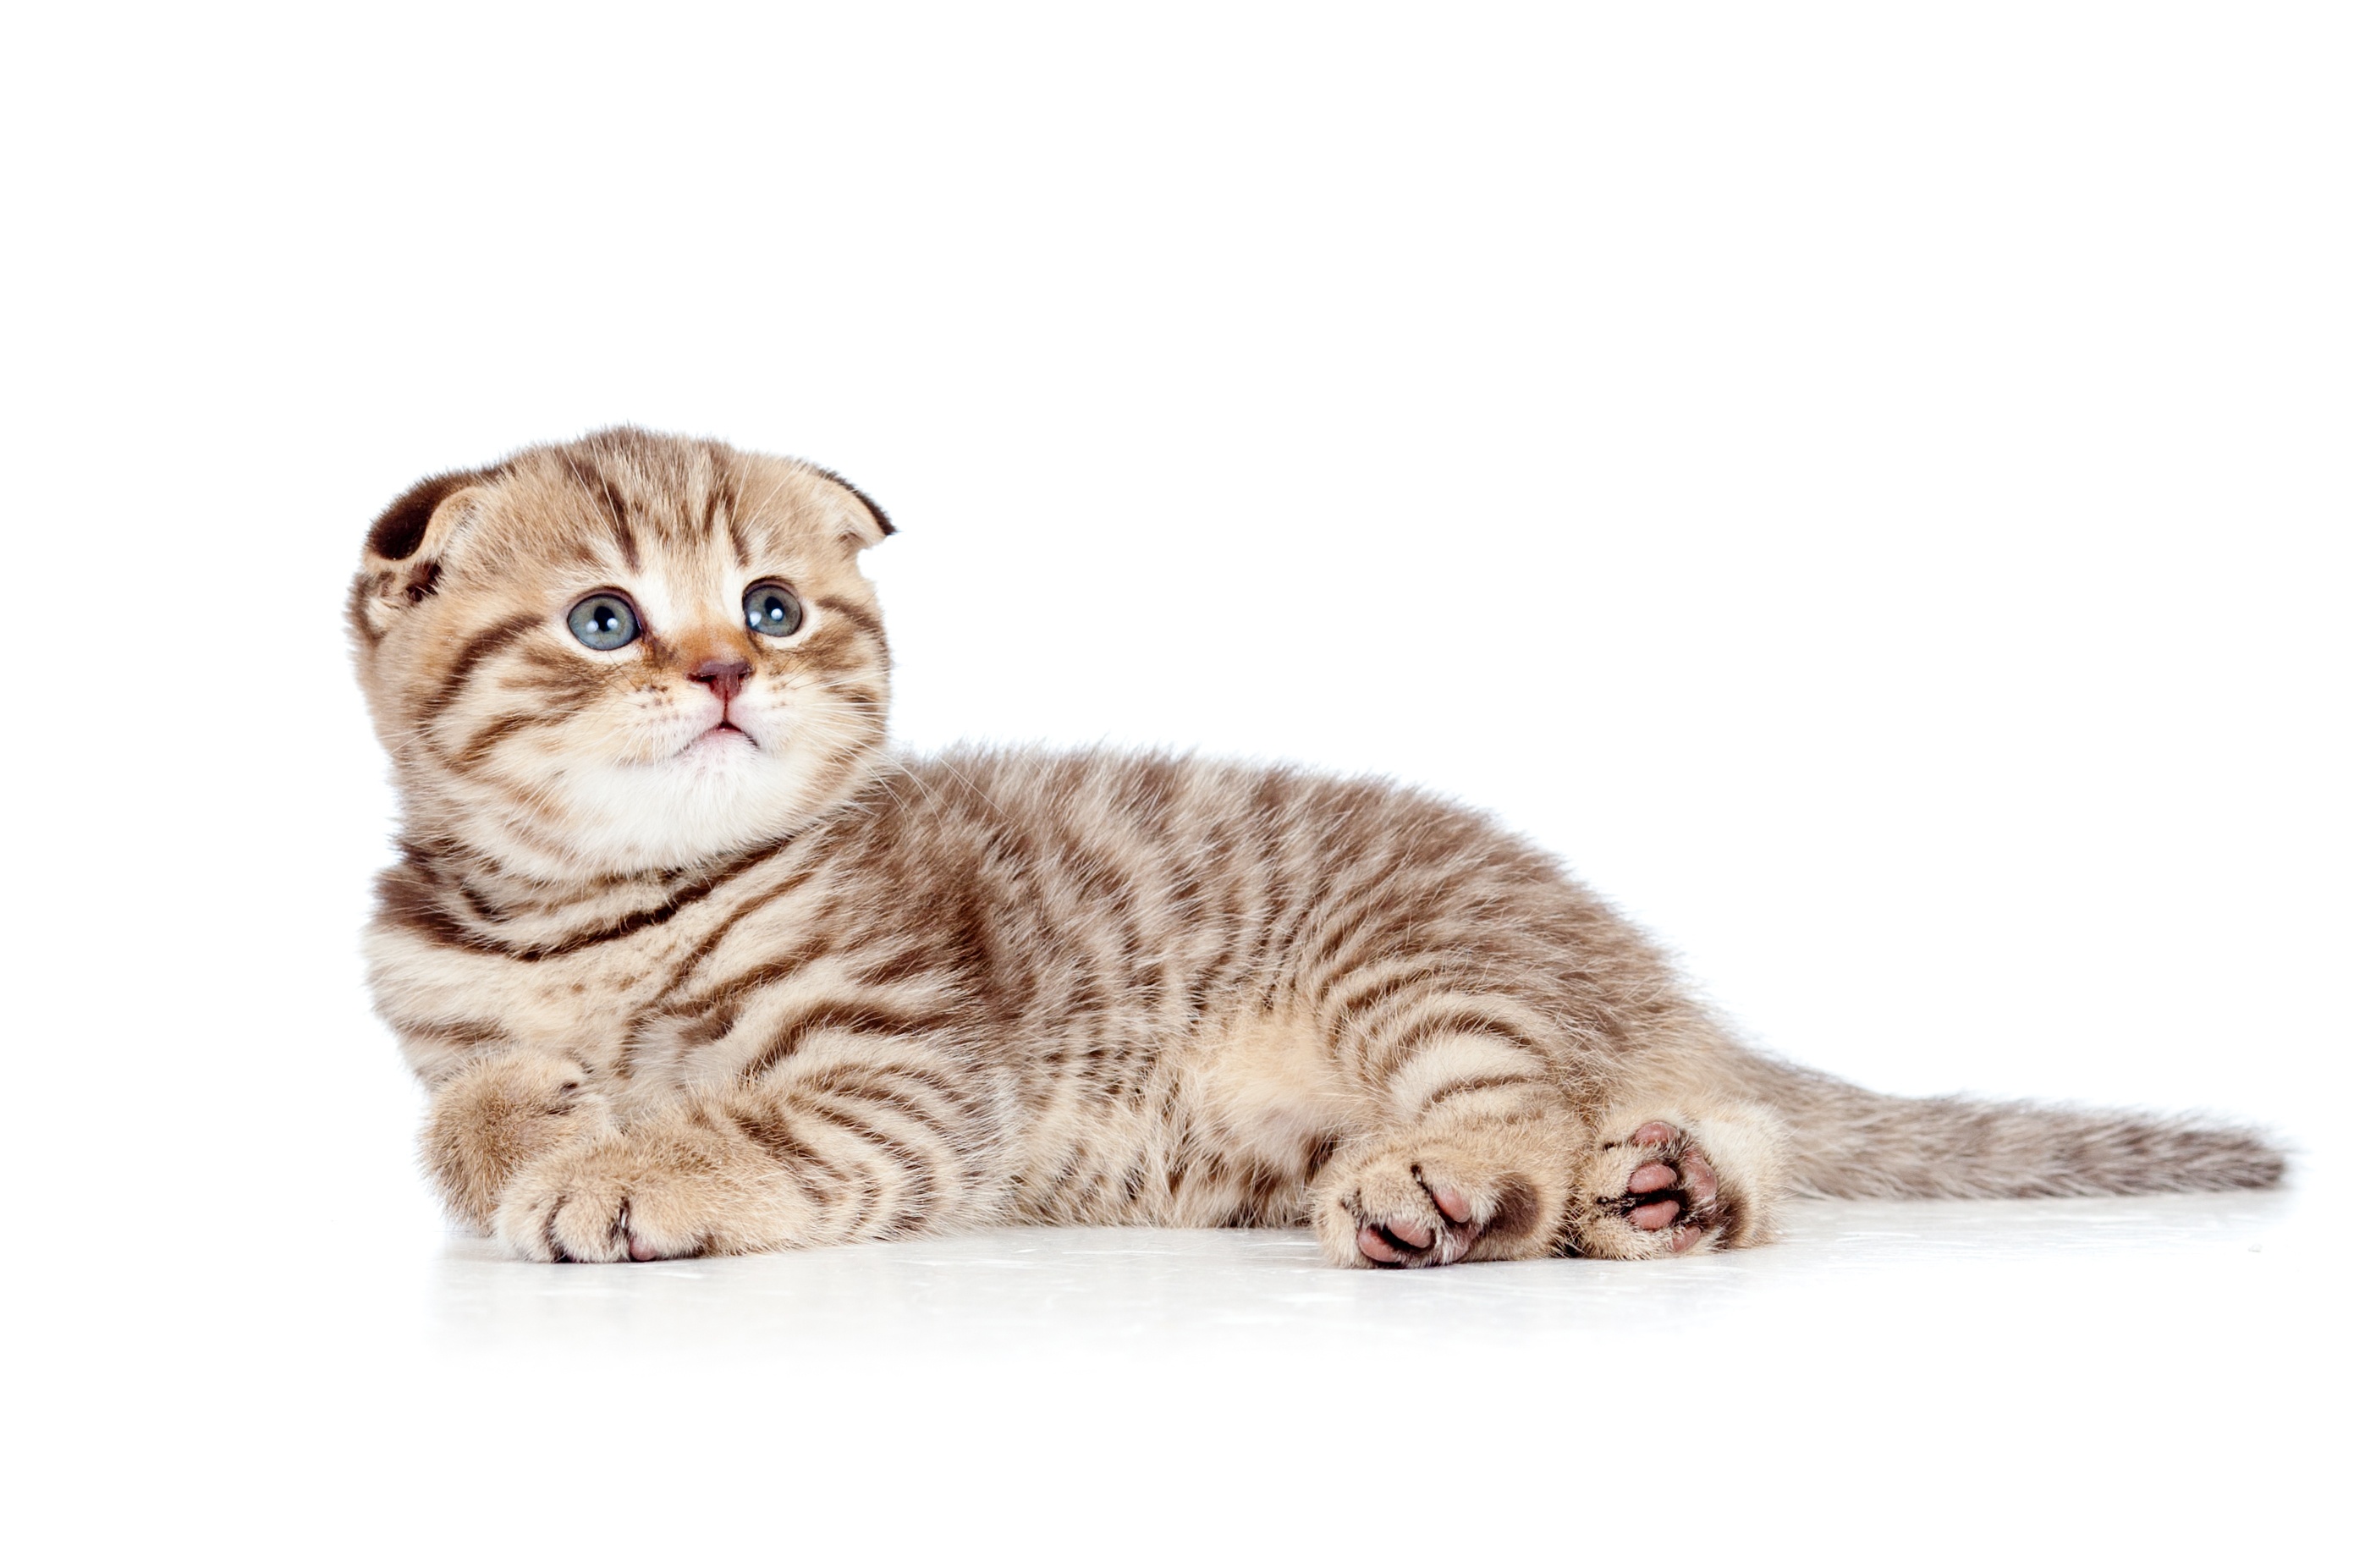 Kot szkocki zwisłouchy - czarujący wygląd i towarzyski charakter